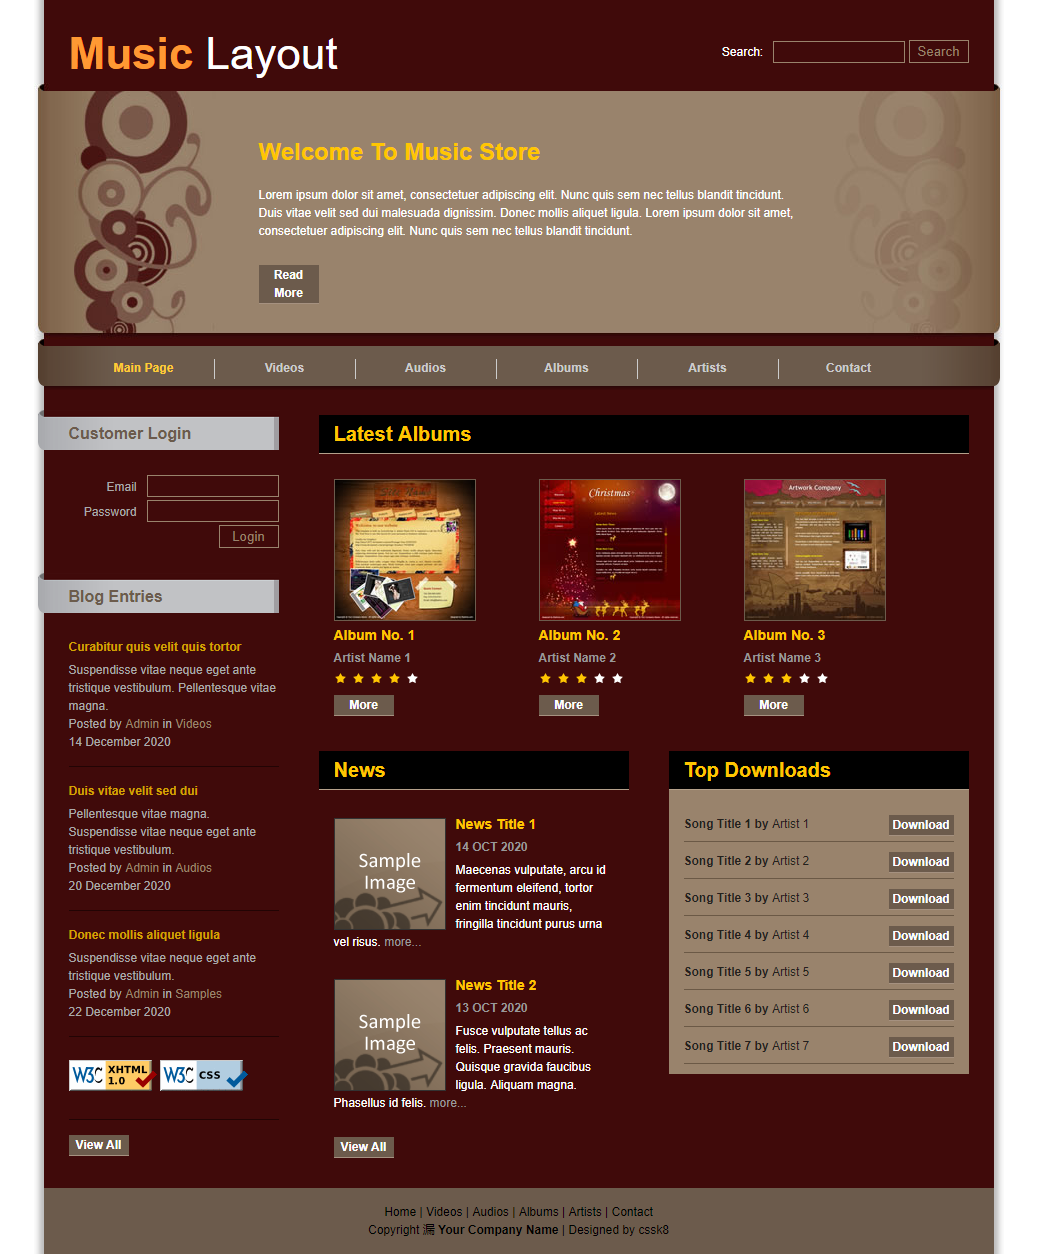 棕色精致效果的音乐专辑排行榜网站模板下载